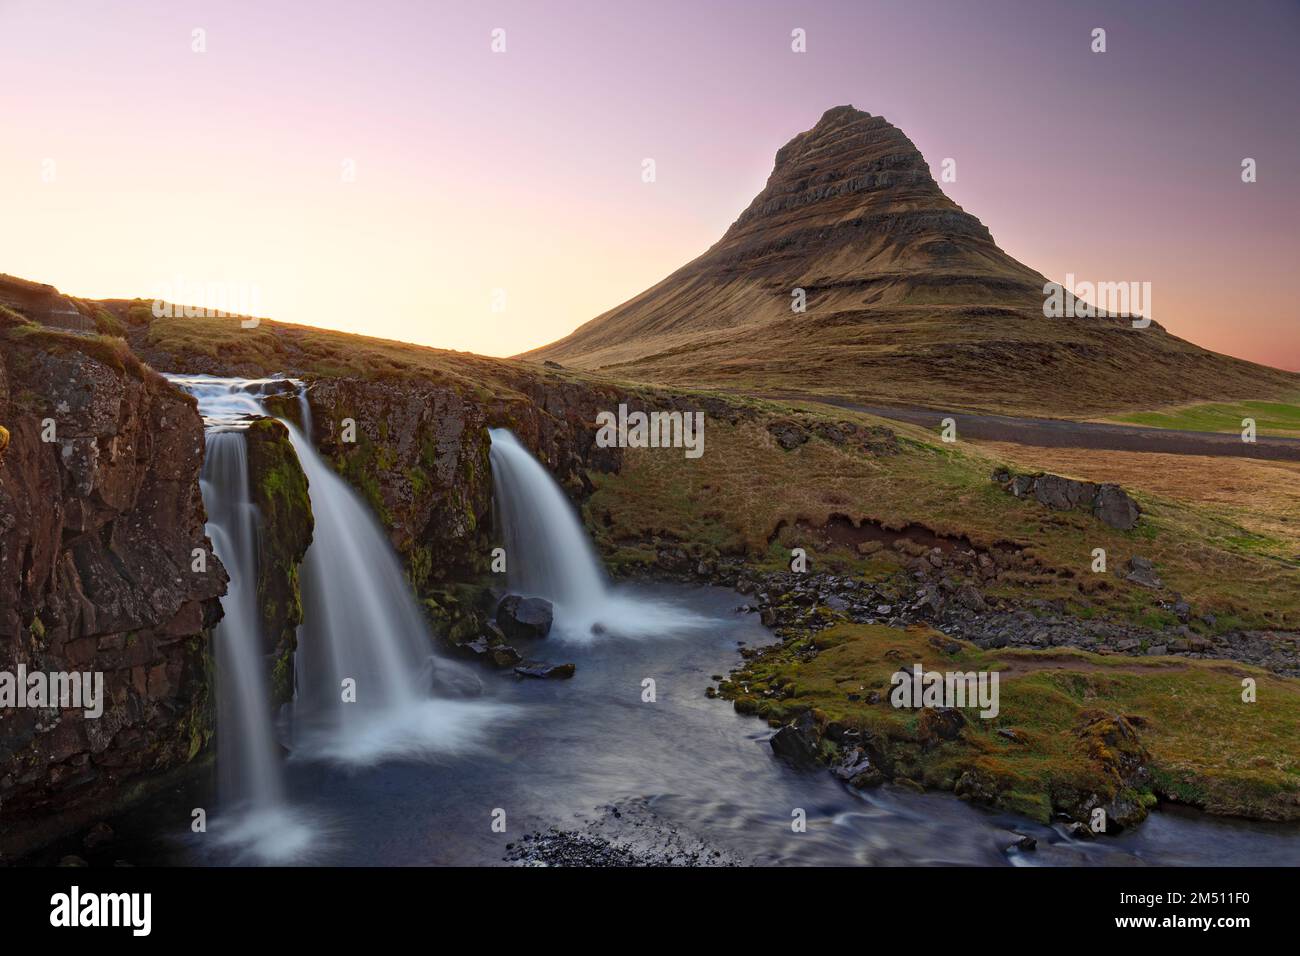 Montagne Kirkjufell, montagne contre ciel clair et chute d'eau en premier plan, région occidentale, Islande Banque D'Images